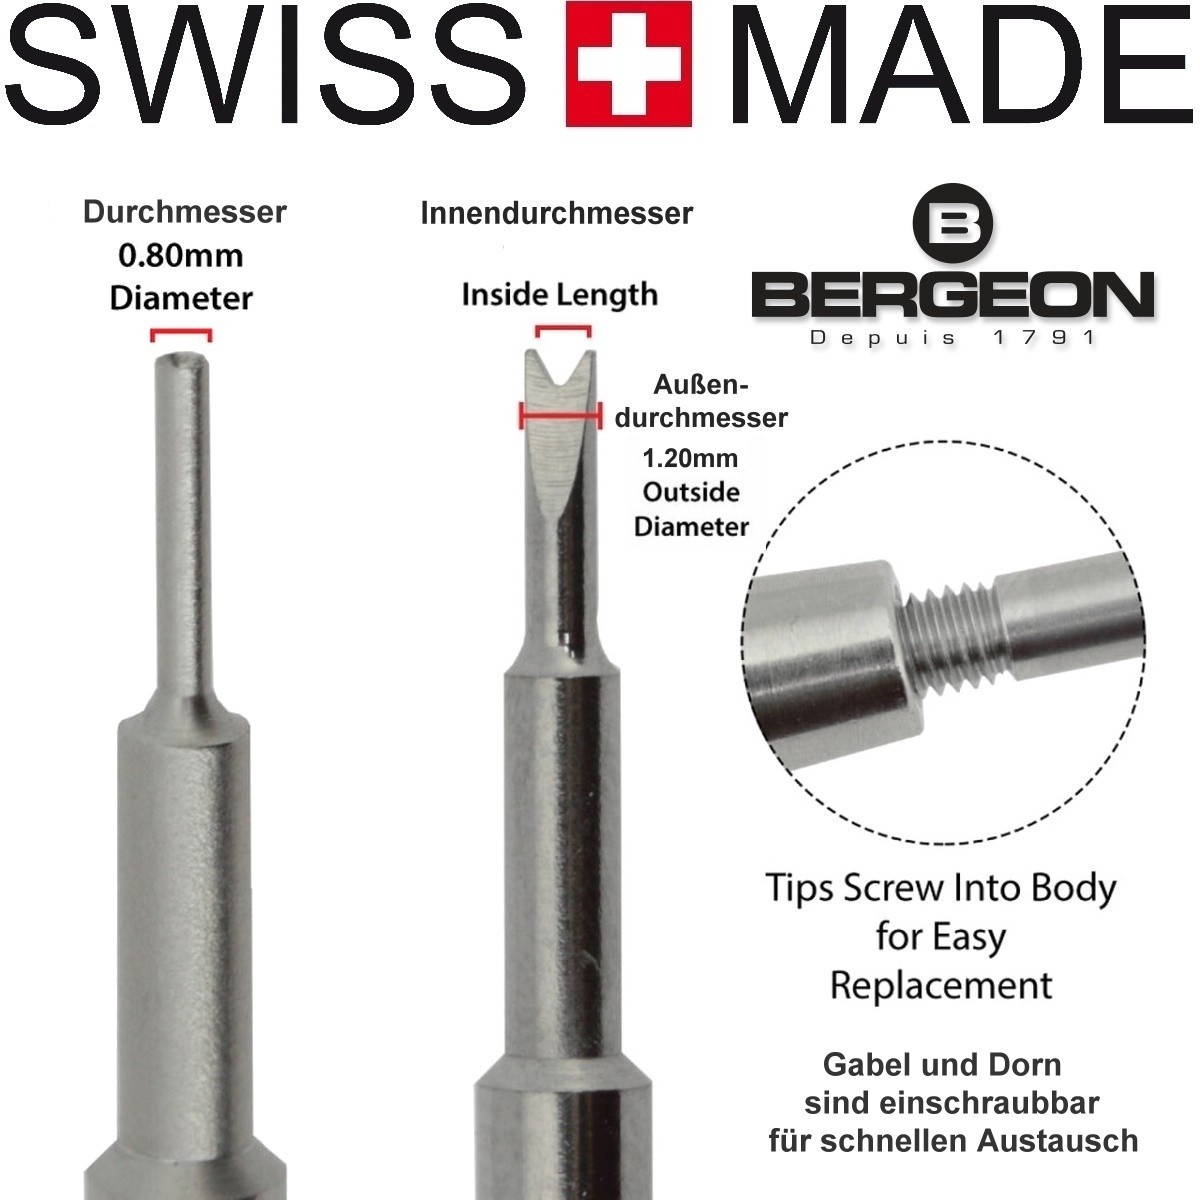 Bergeon 6767-F - Professionelles Federsteg Werkzeug - WatchBandit